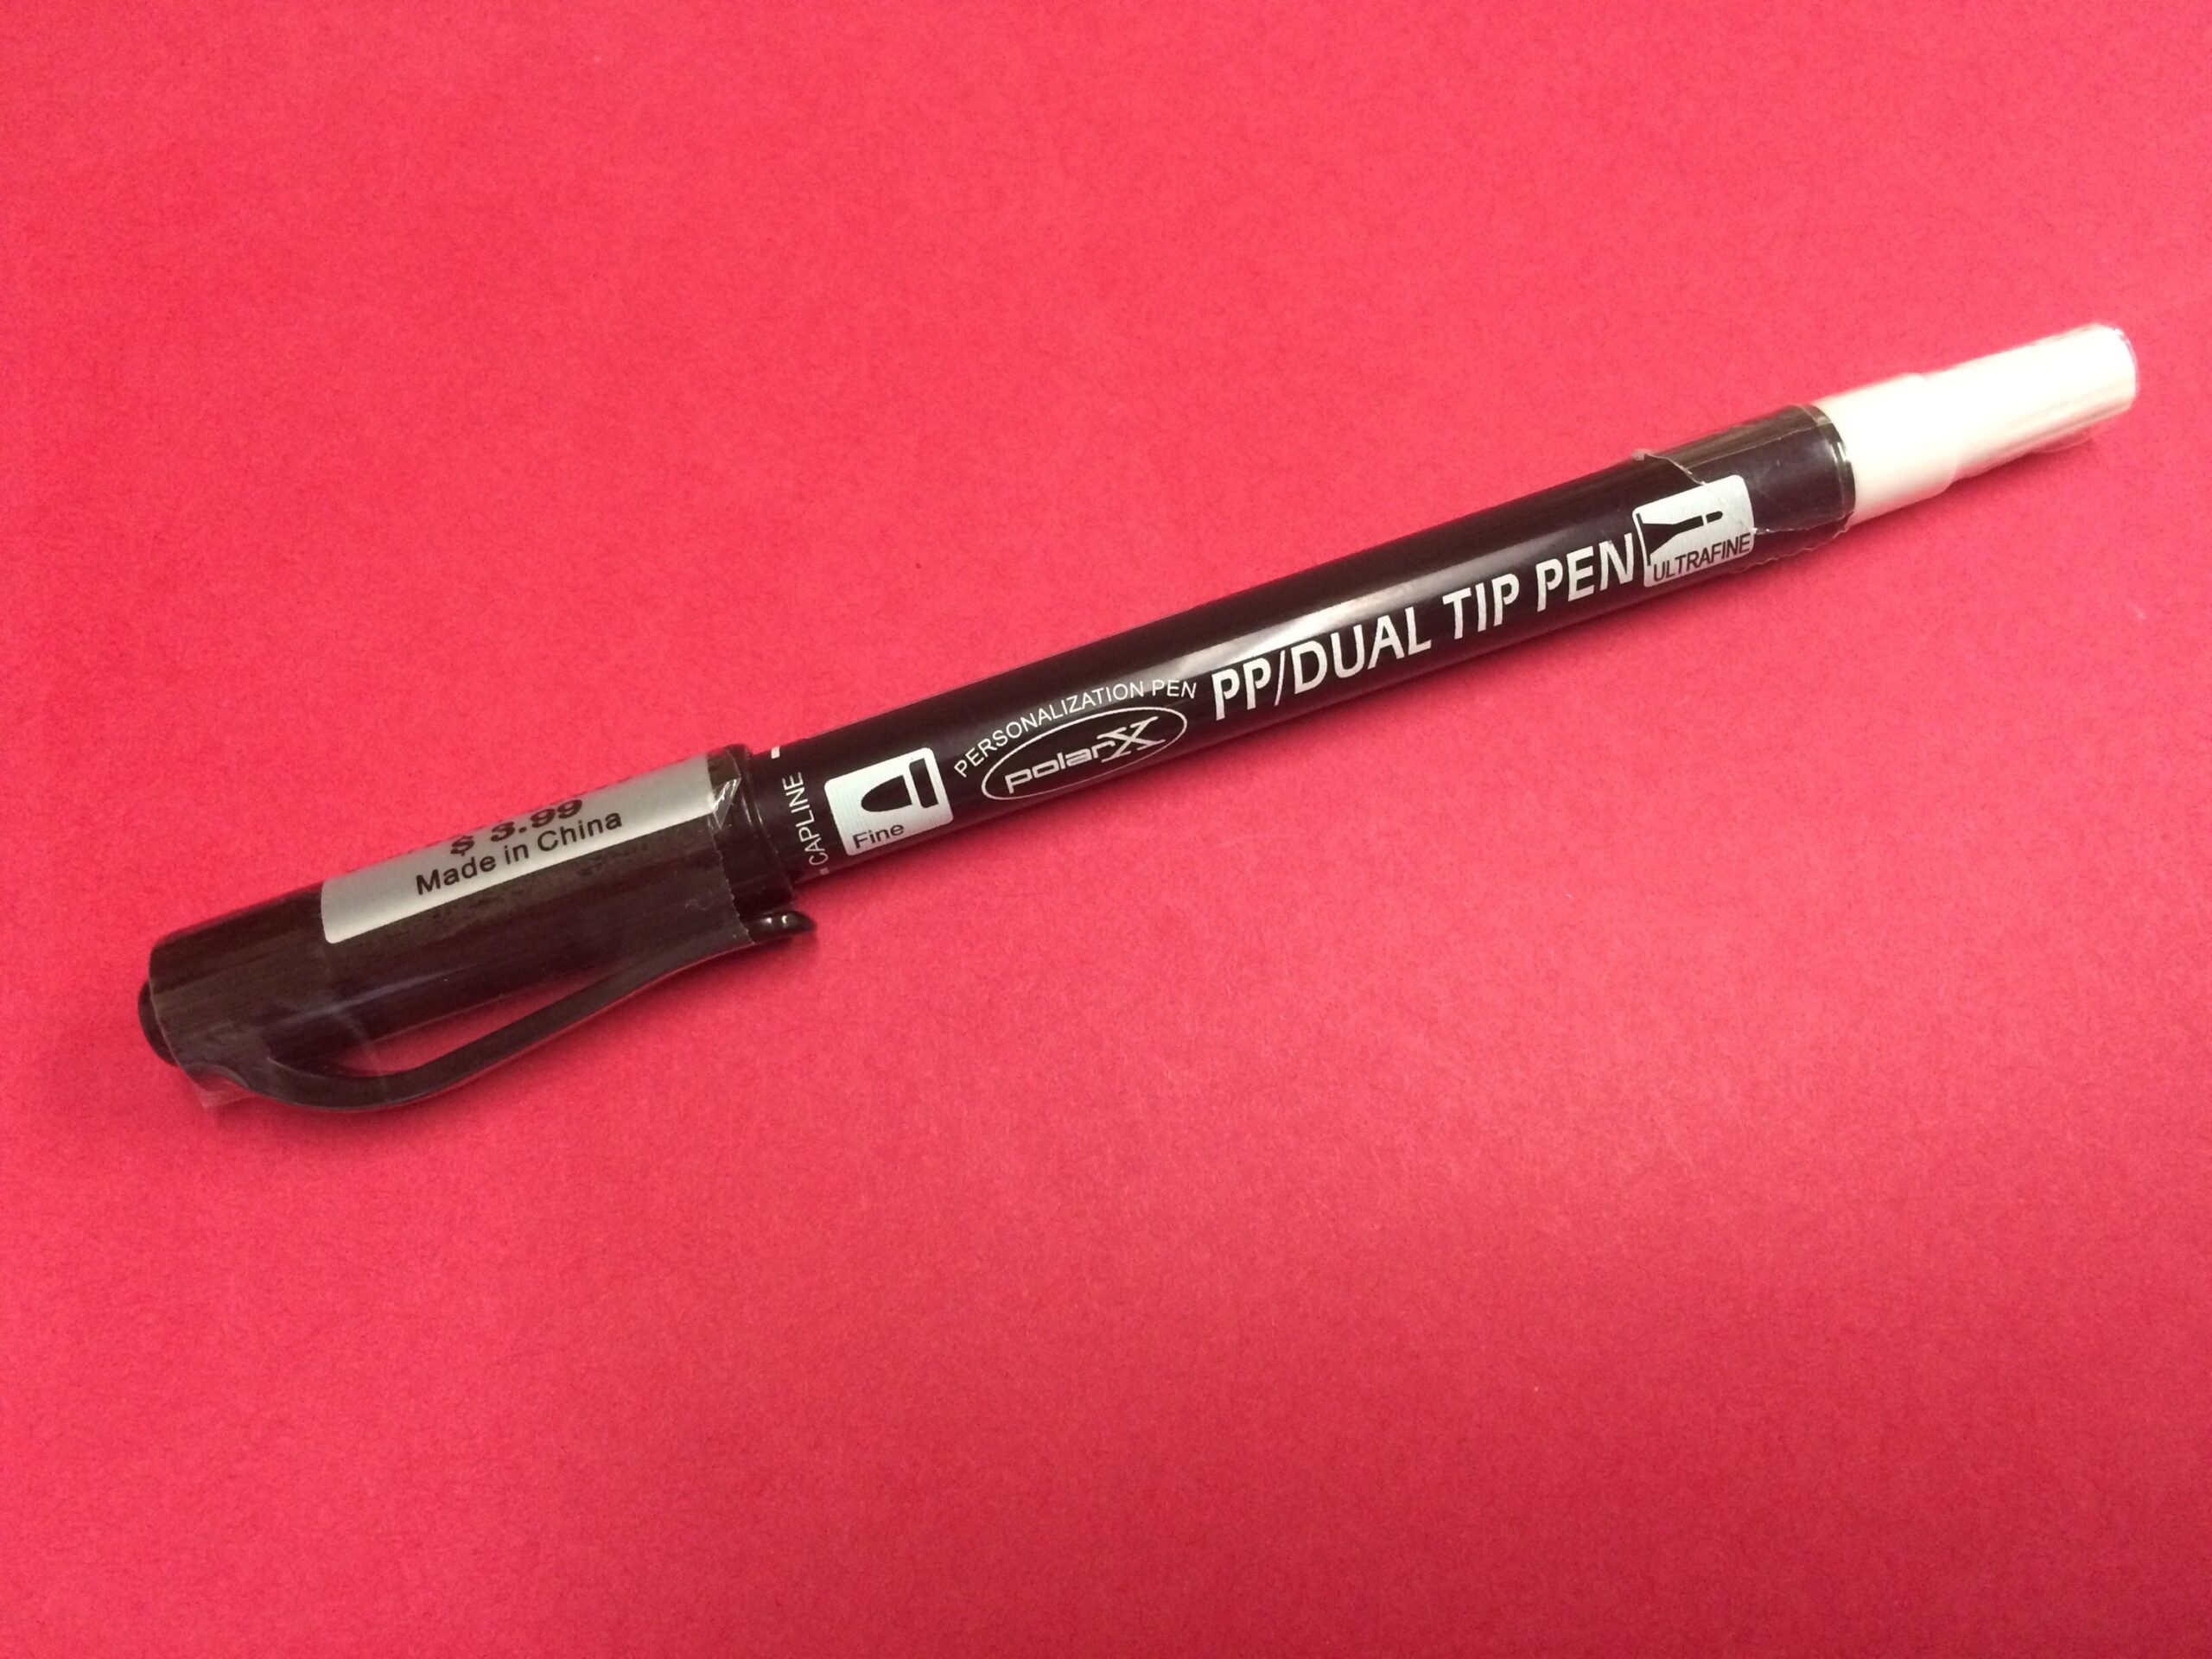 PP/DUAL TIP - Personalizing Dual Tip Pen (black)